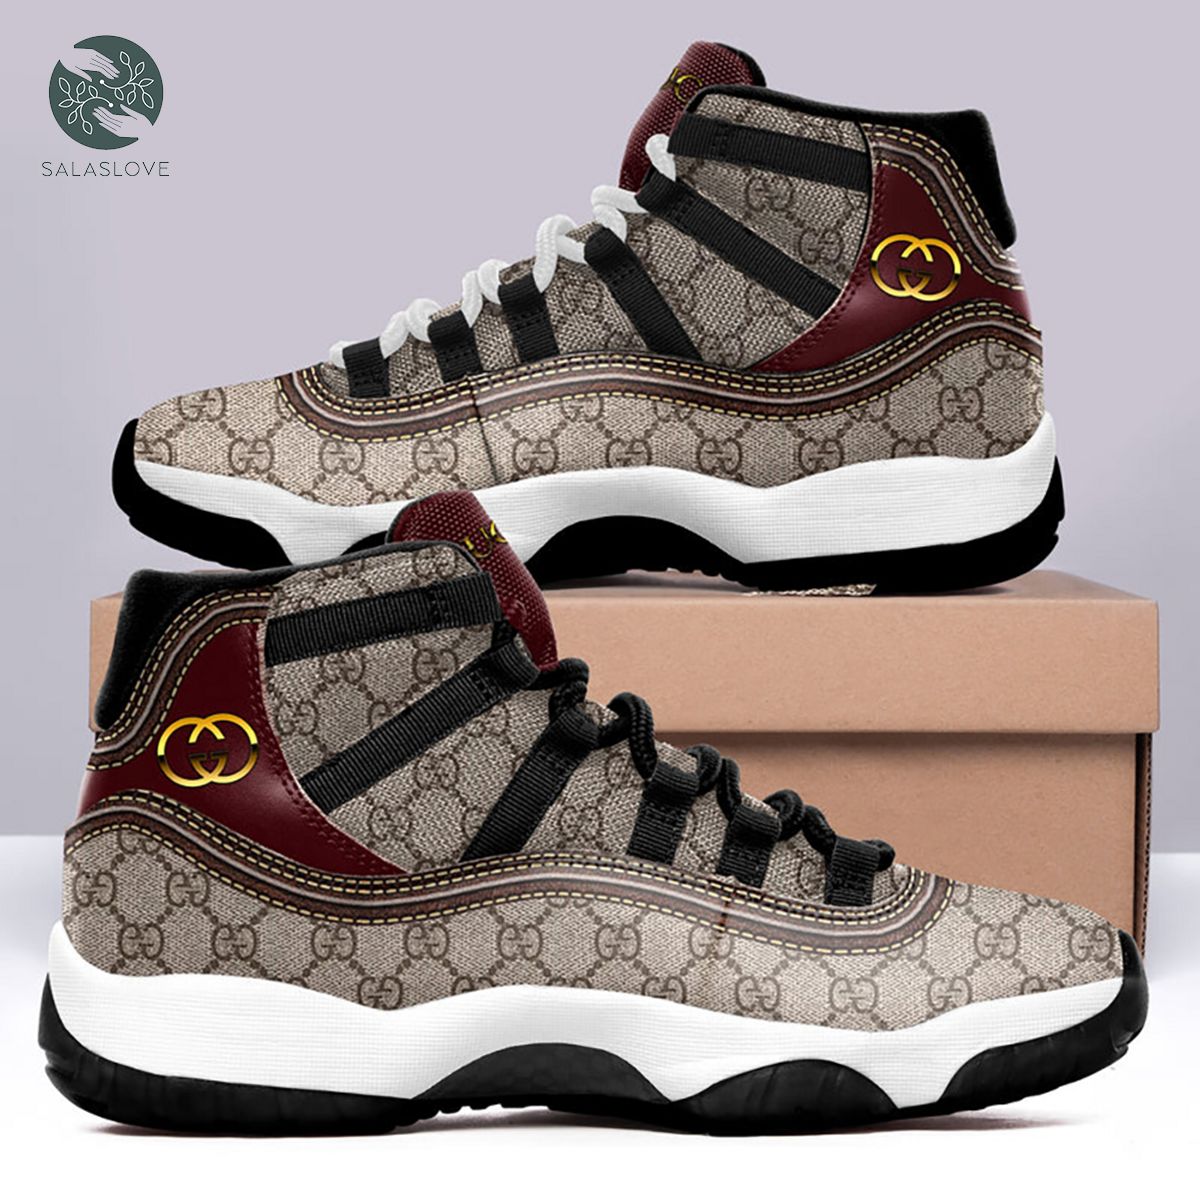 Gucci Air Jordan 11 Sneakers Shoes Hot For Men Women